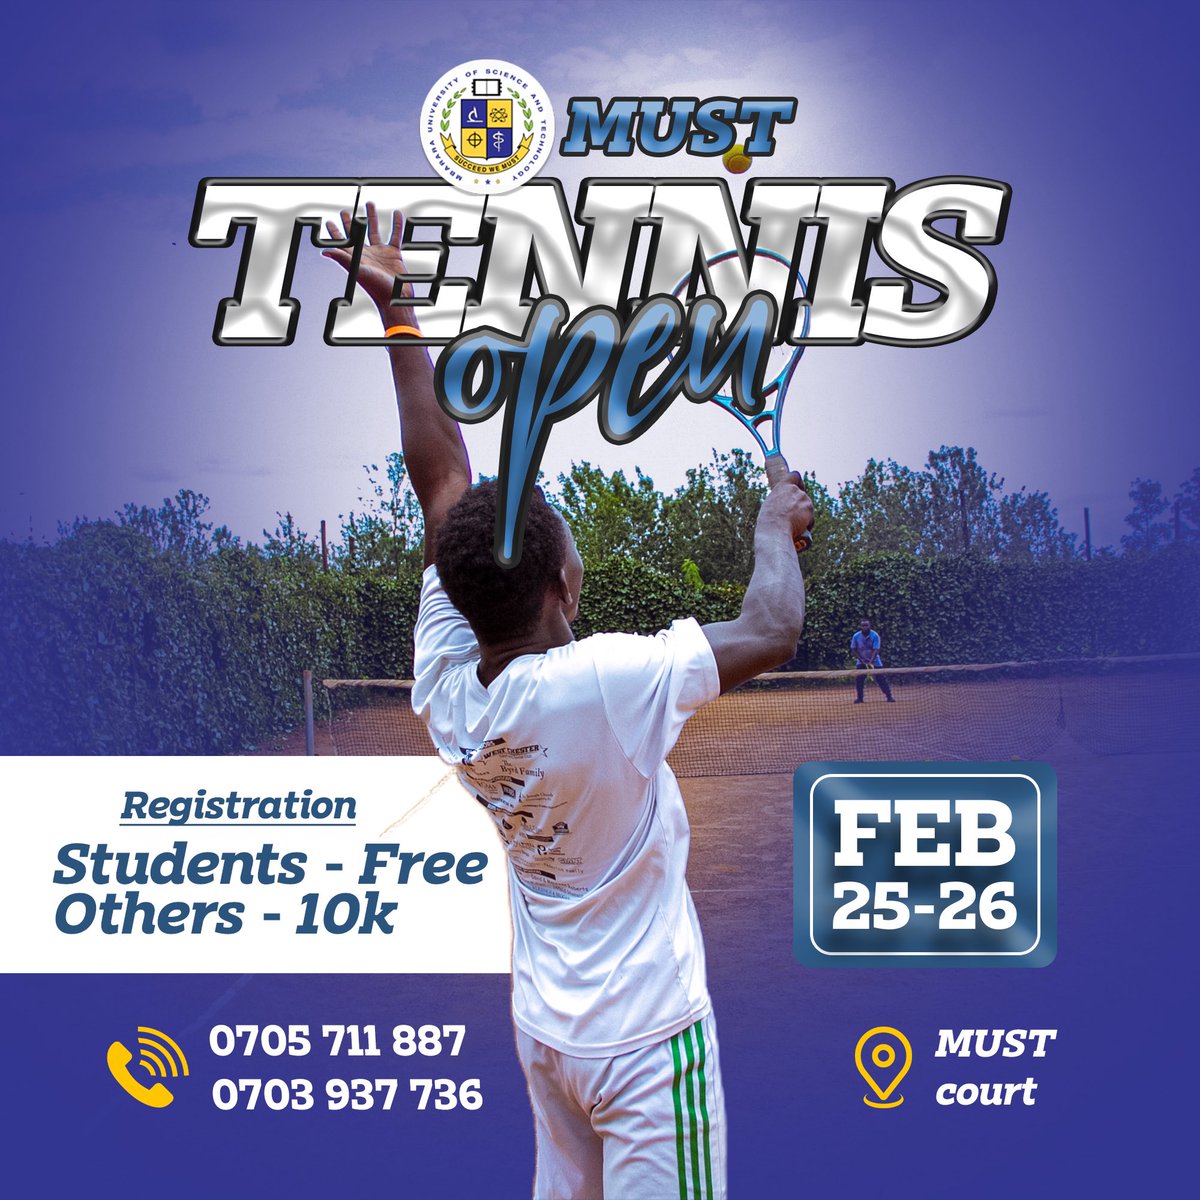 Mbarara tennis open challenge is here 🎾🔥. Get yourself registered💪
#tennis #openchallenge #mbarara